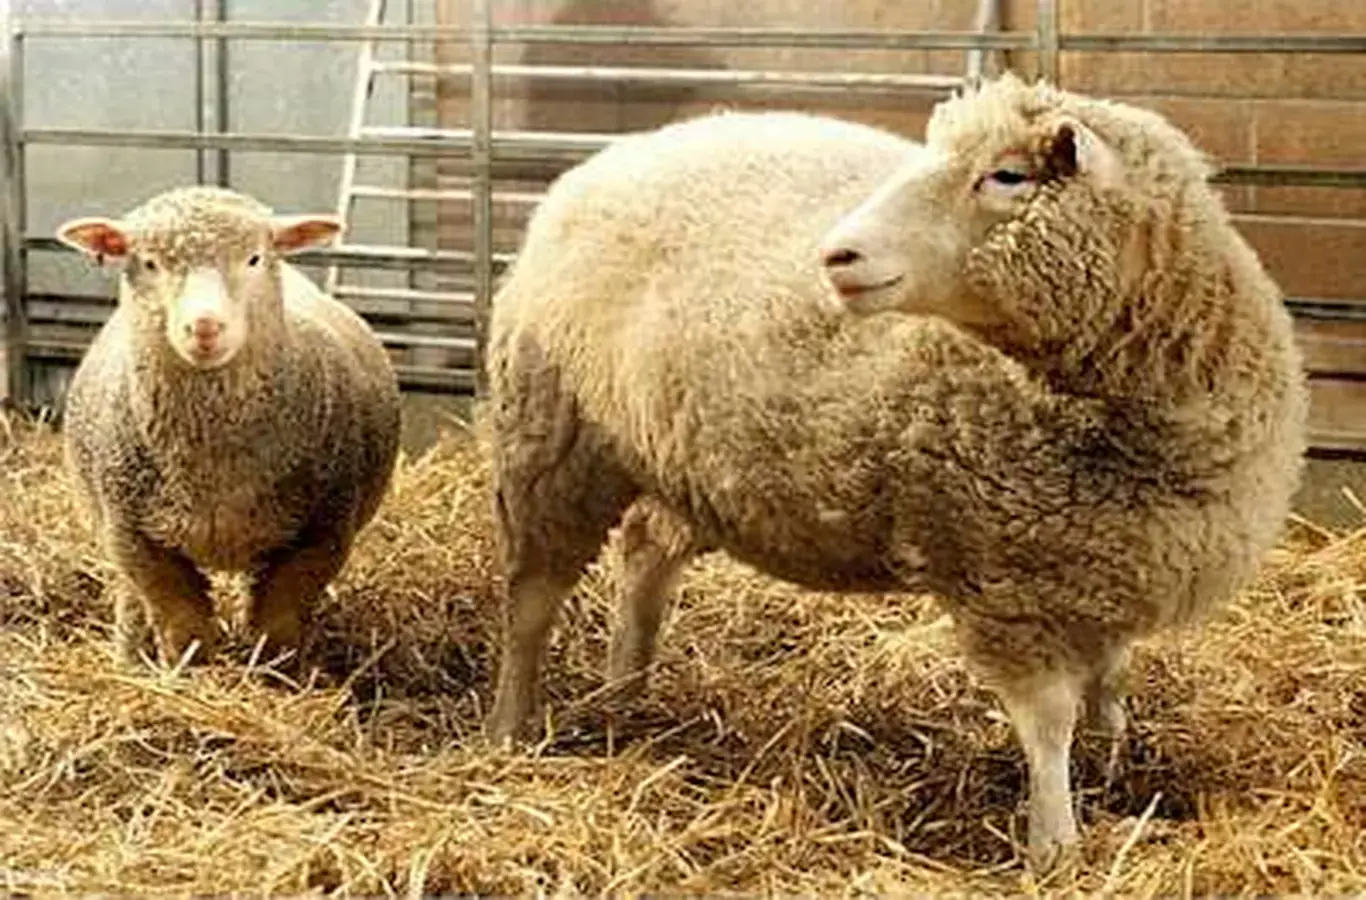 foto da ovelha dolly para ilustrar texto sobre biotecnologia e engenharia genética